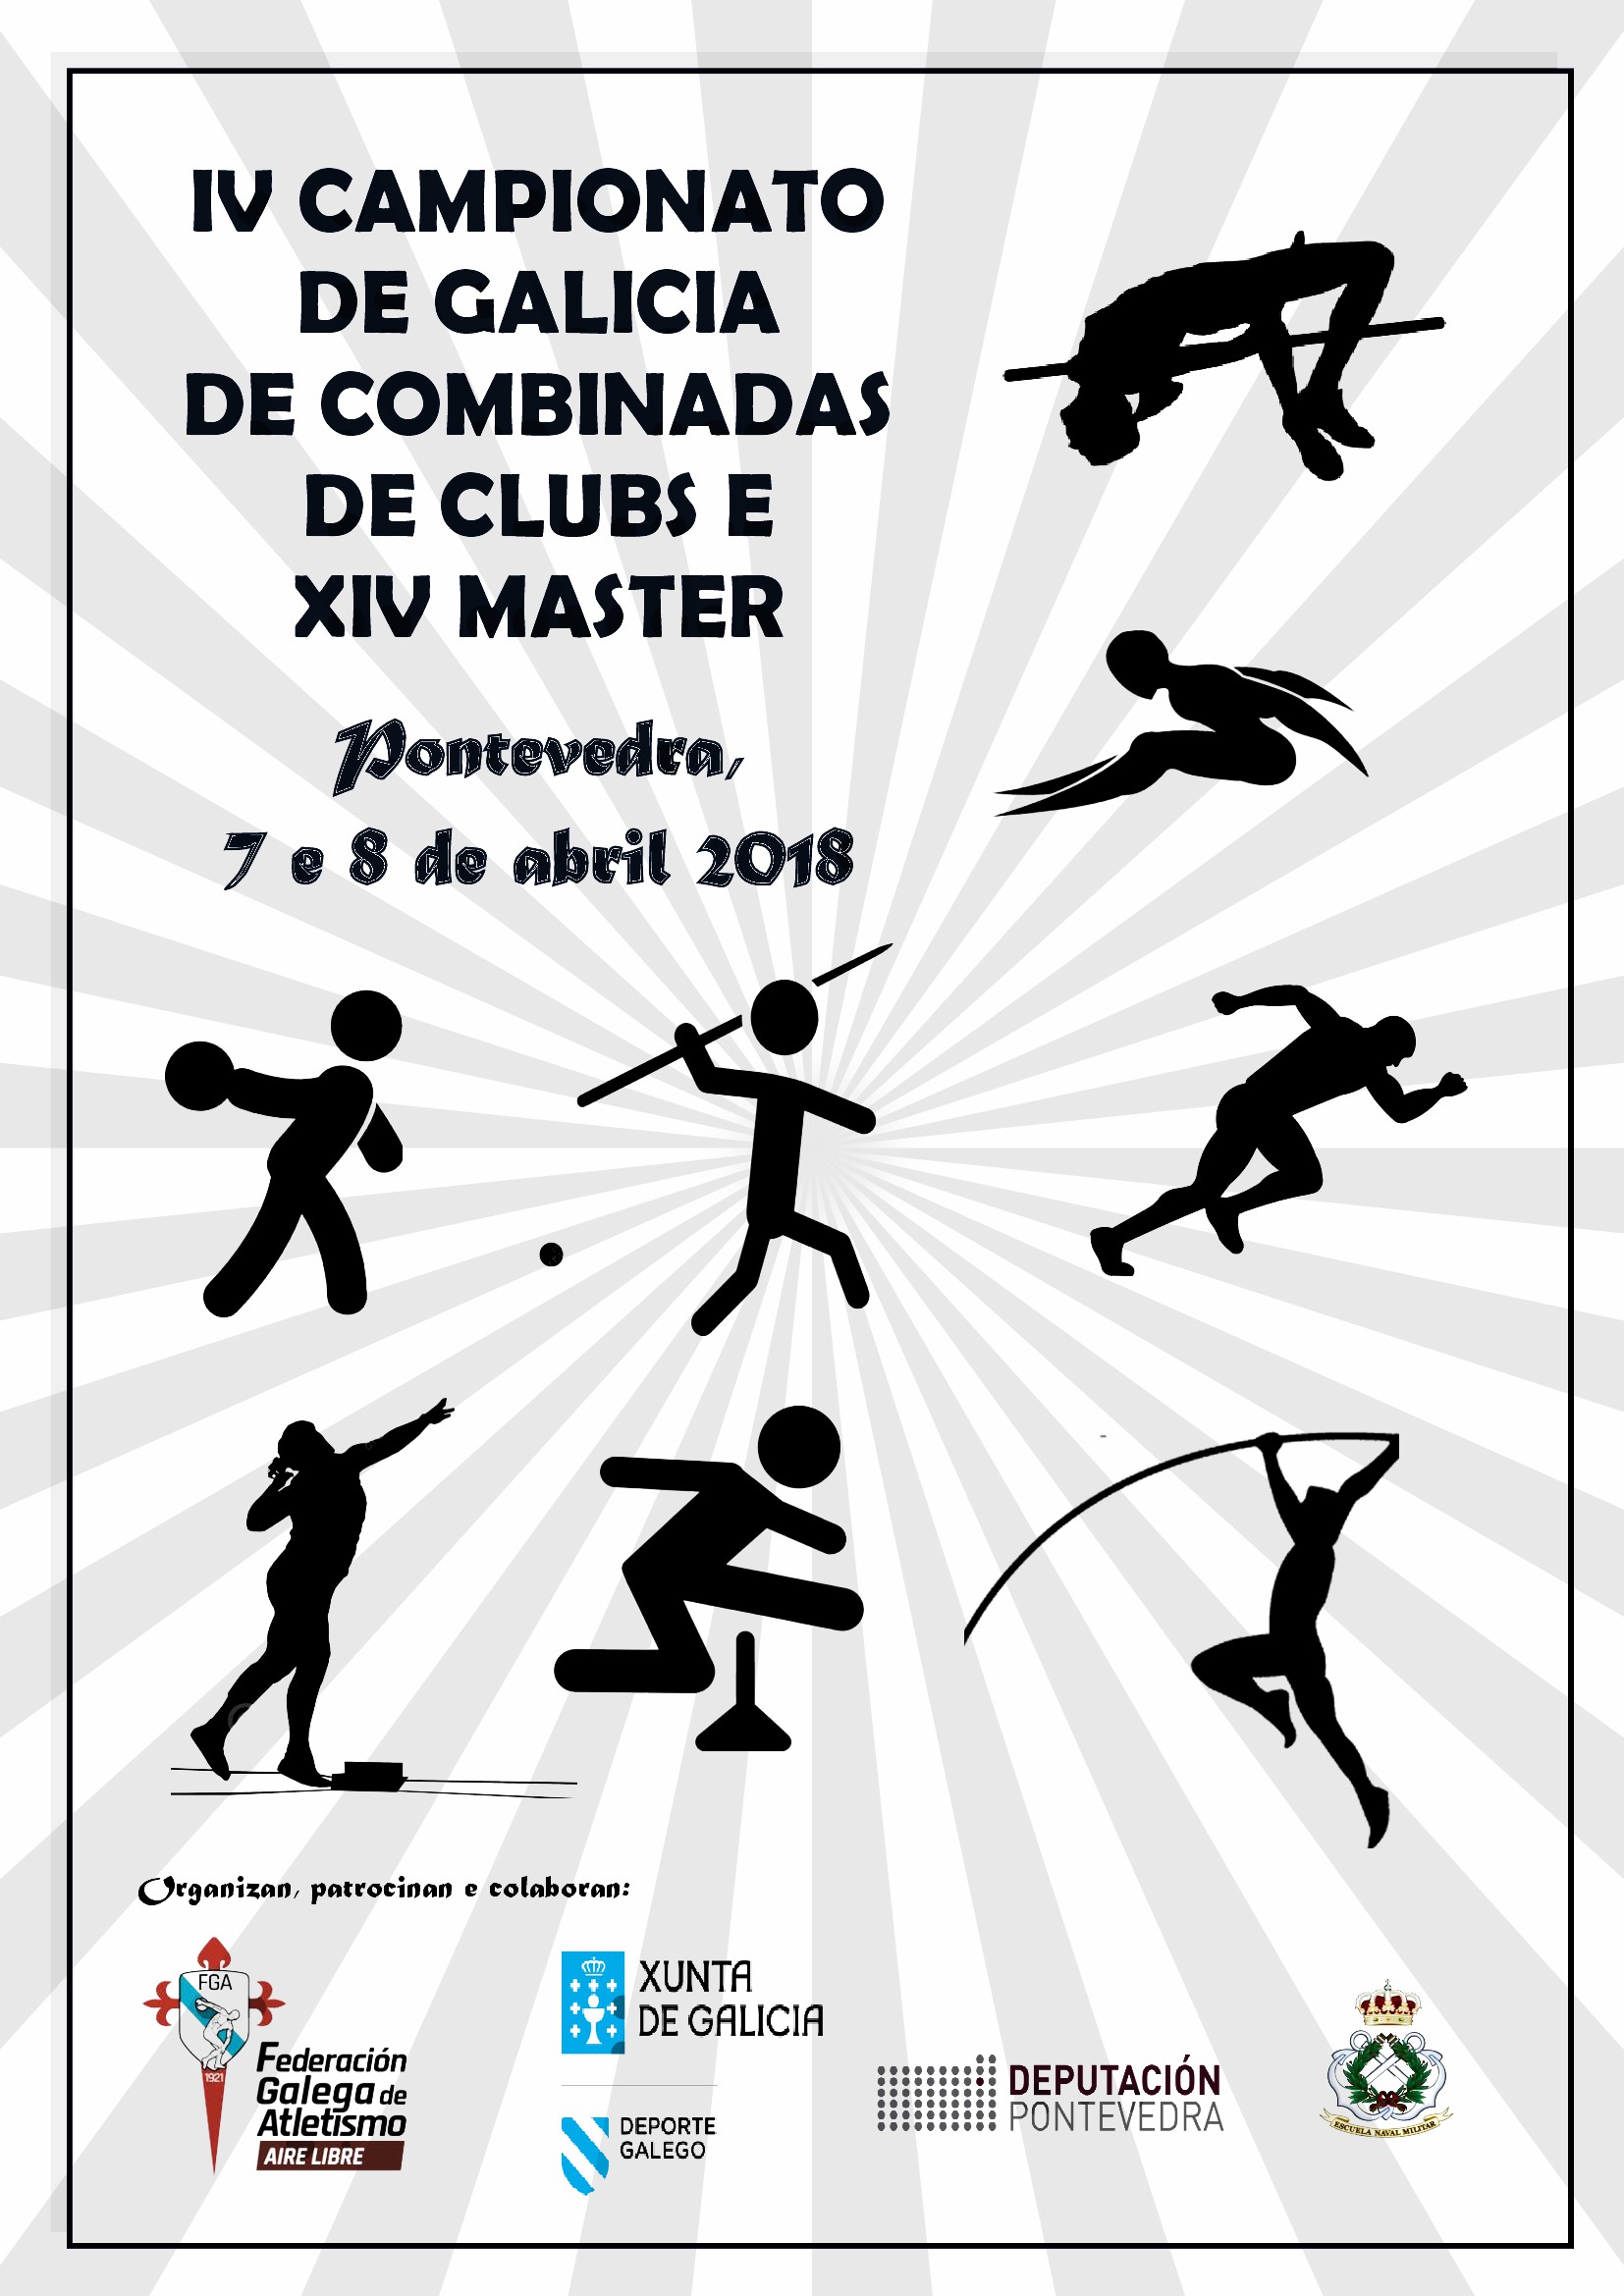 IV Campionato de Galicia de Clubs de Probas Combinadas – XIV Campionato de Galicia Máster de Probas Combinadas